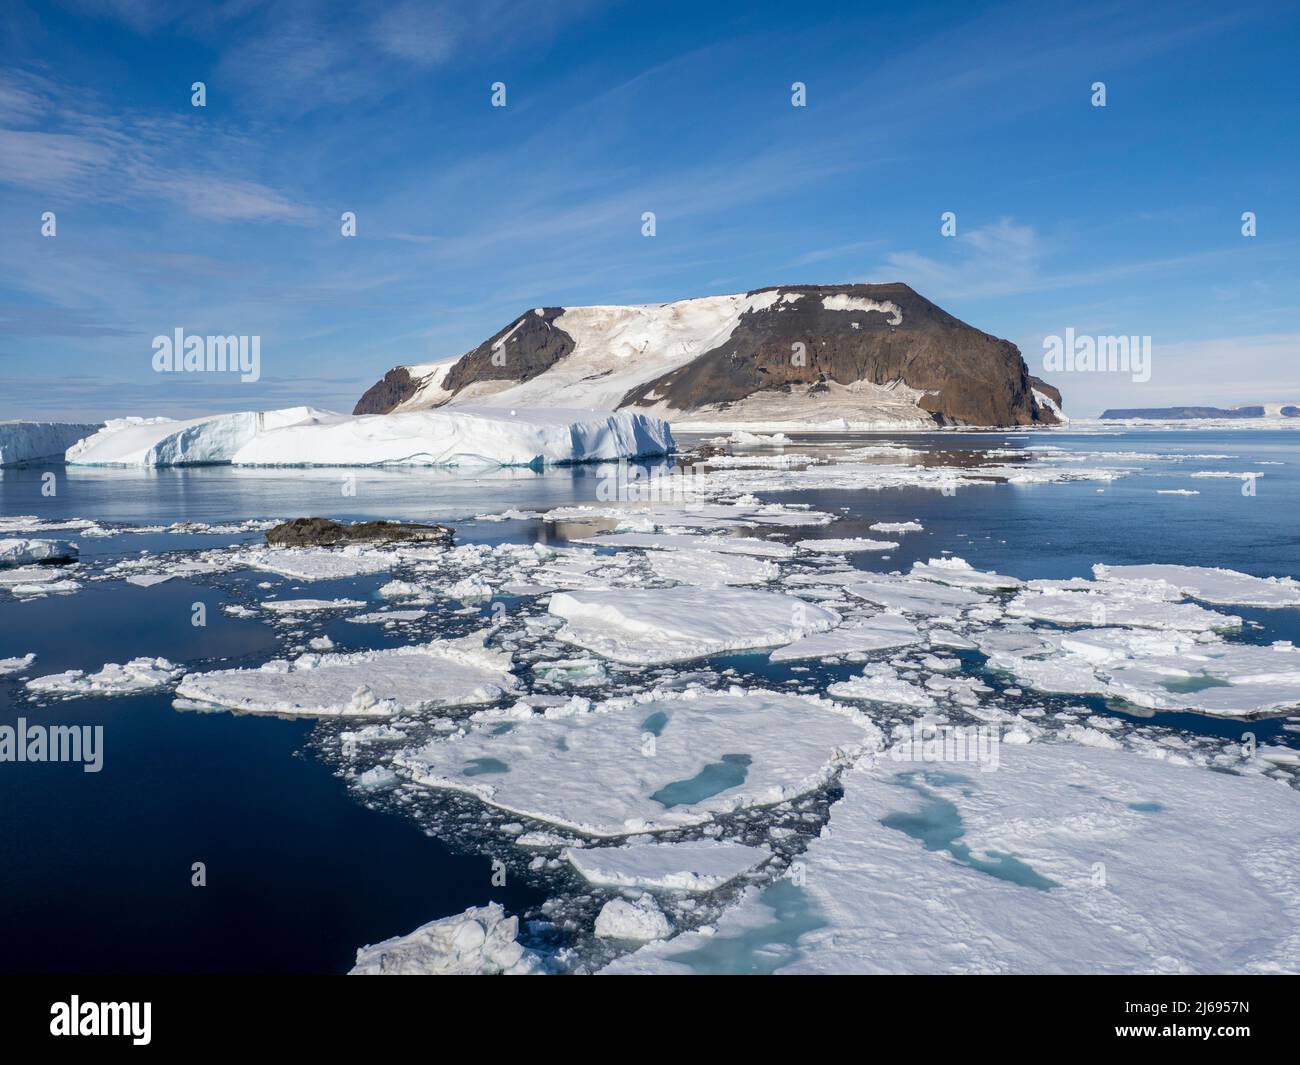 La glace étouffe les eaux entourant l'île James Ross et l'île Lockyer, la mer de Weddell, l'Antarctique et les régions polaires Banque D'Images